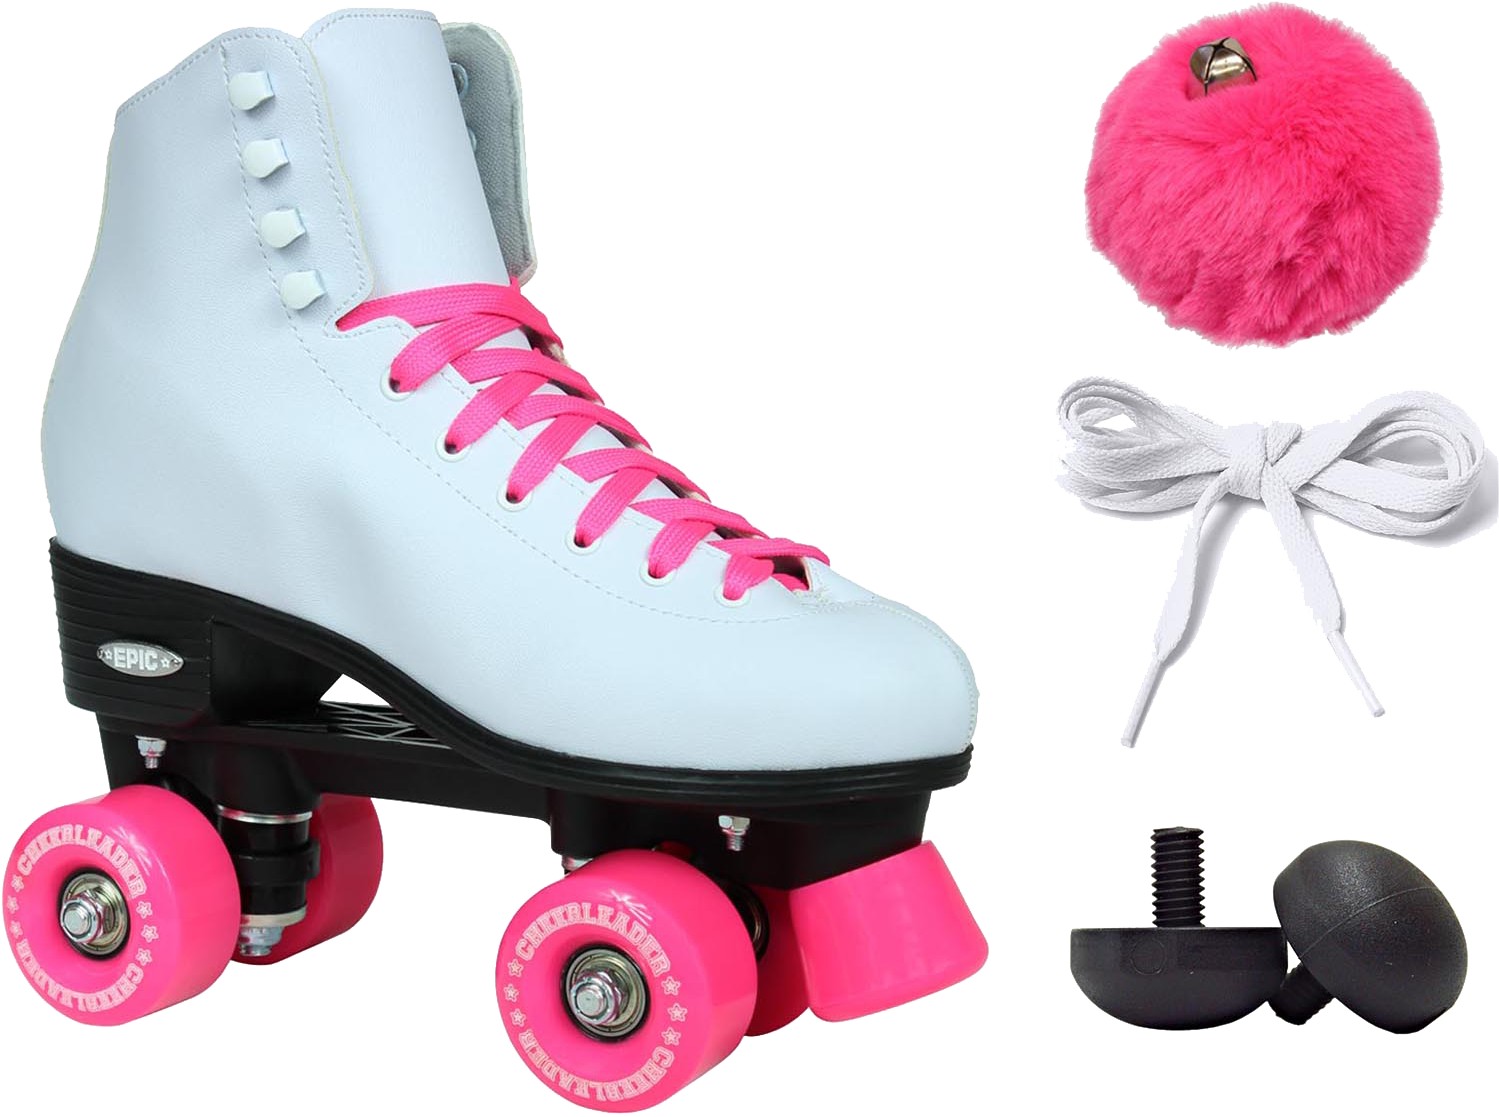 Quad Skates Clipart (1600x1200), Png Download